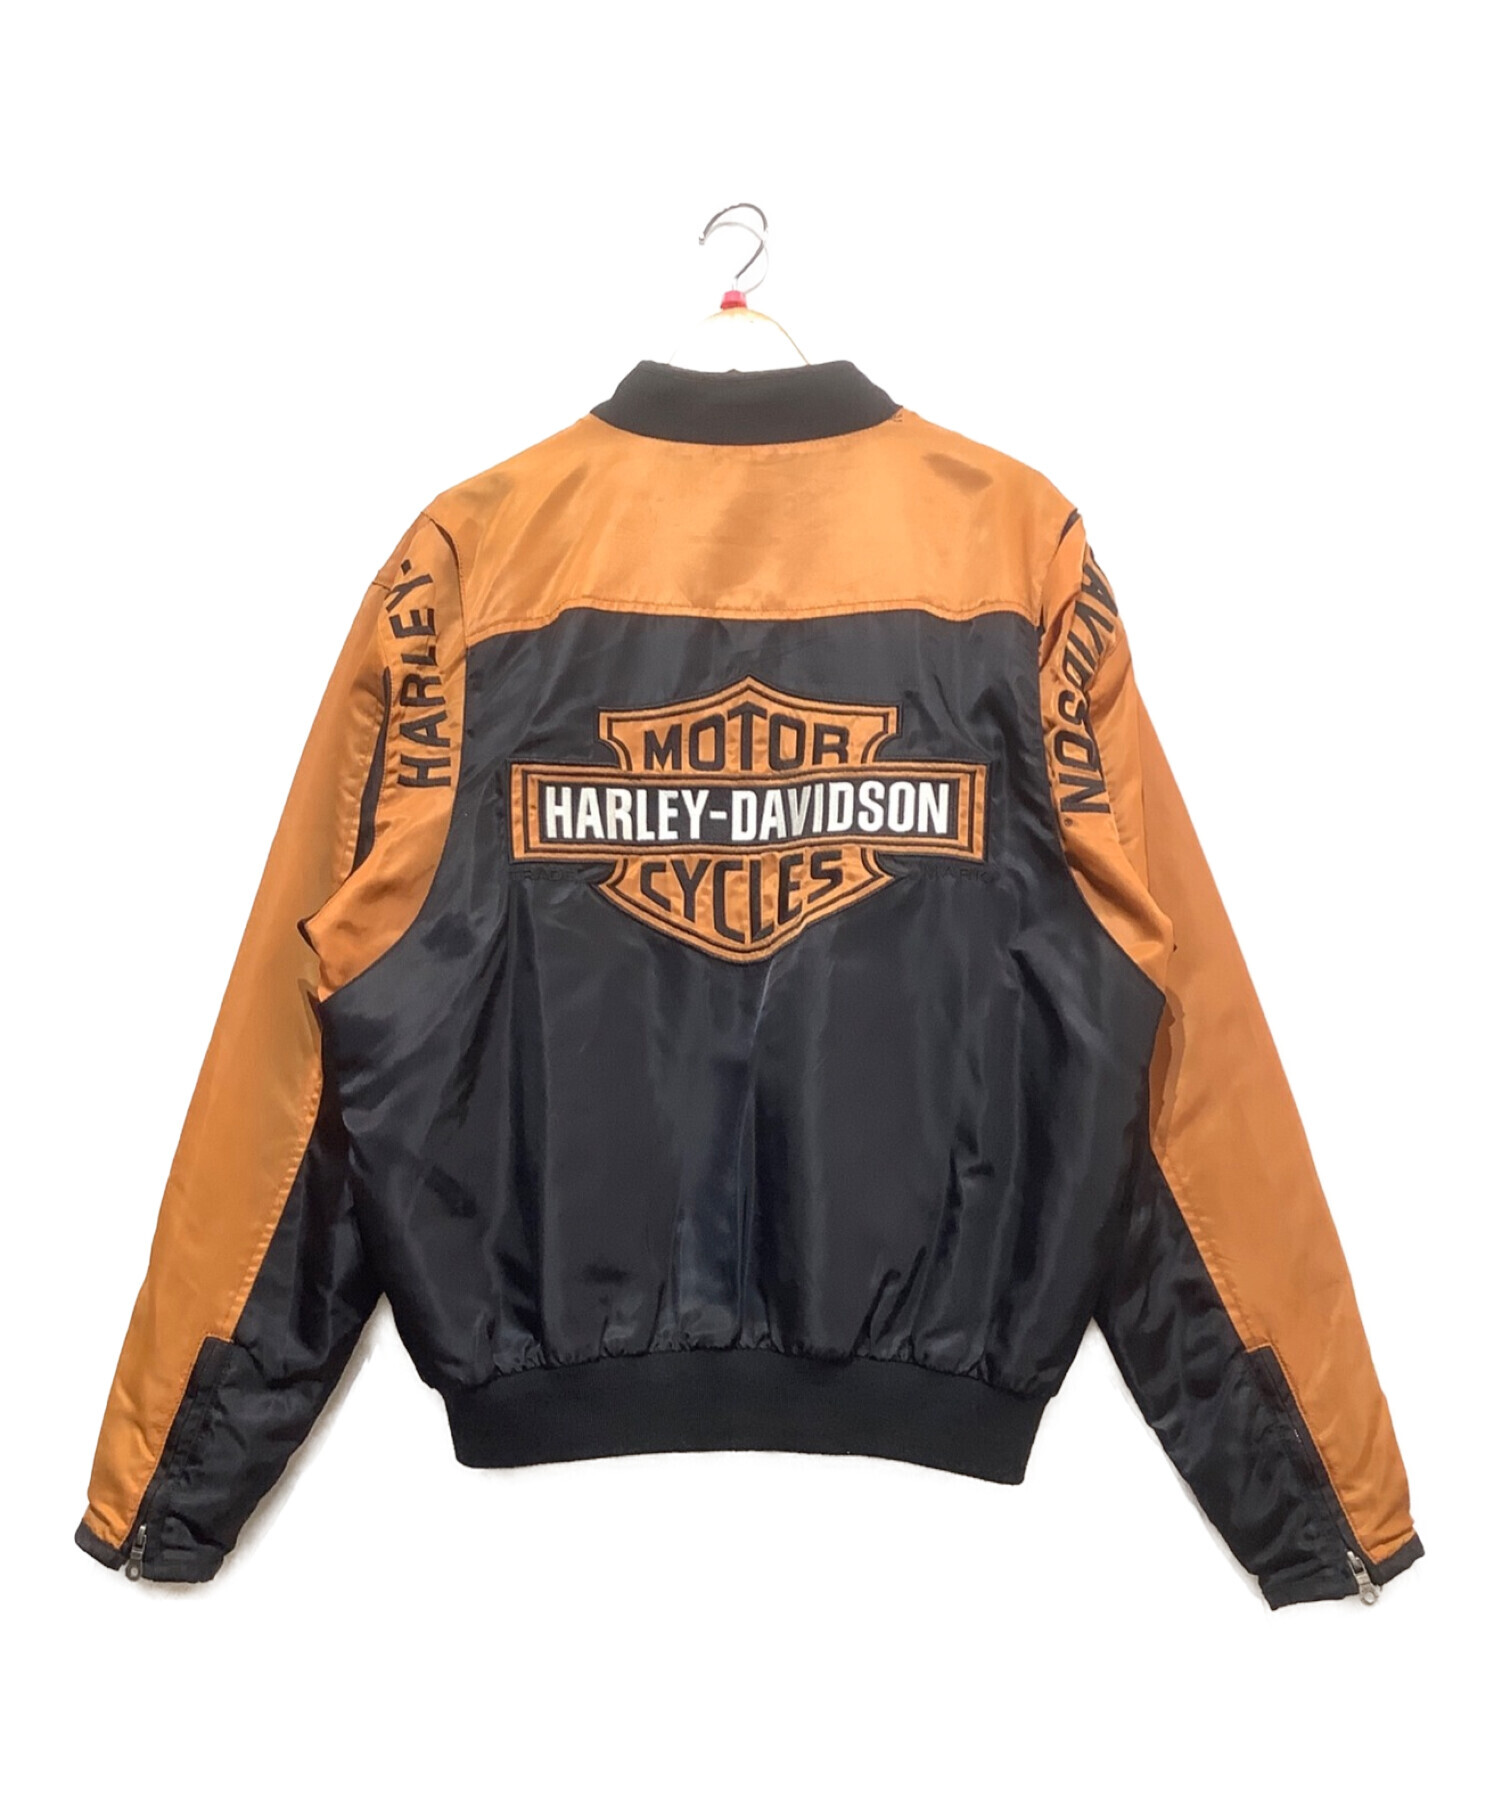 HARLEY DAVIDSON ハーレーダビッドソン メンズバー&シールドロゴナイロンジャケット ブラック×オレンジ サイズ:M